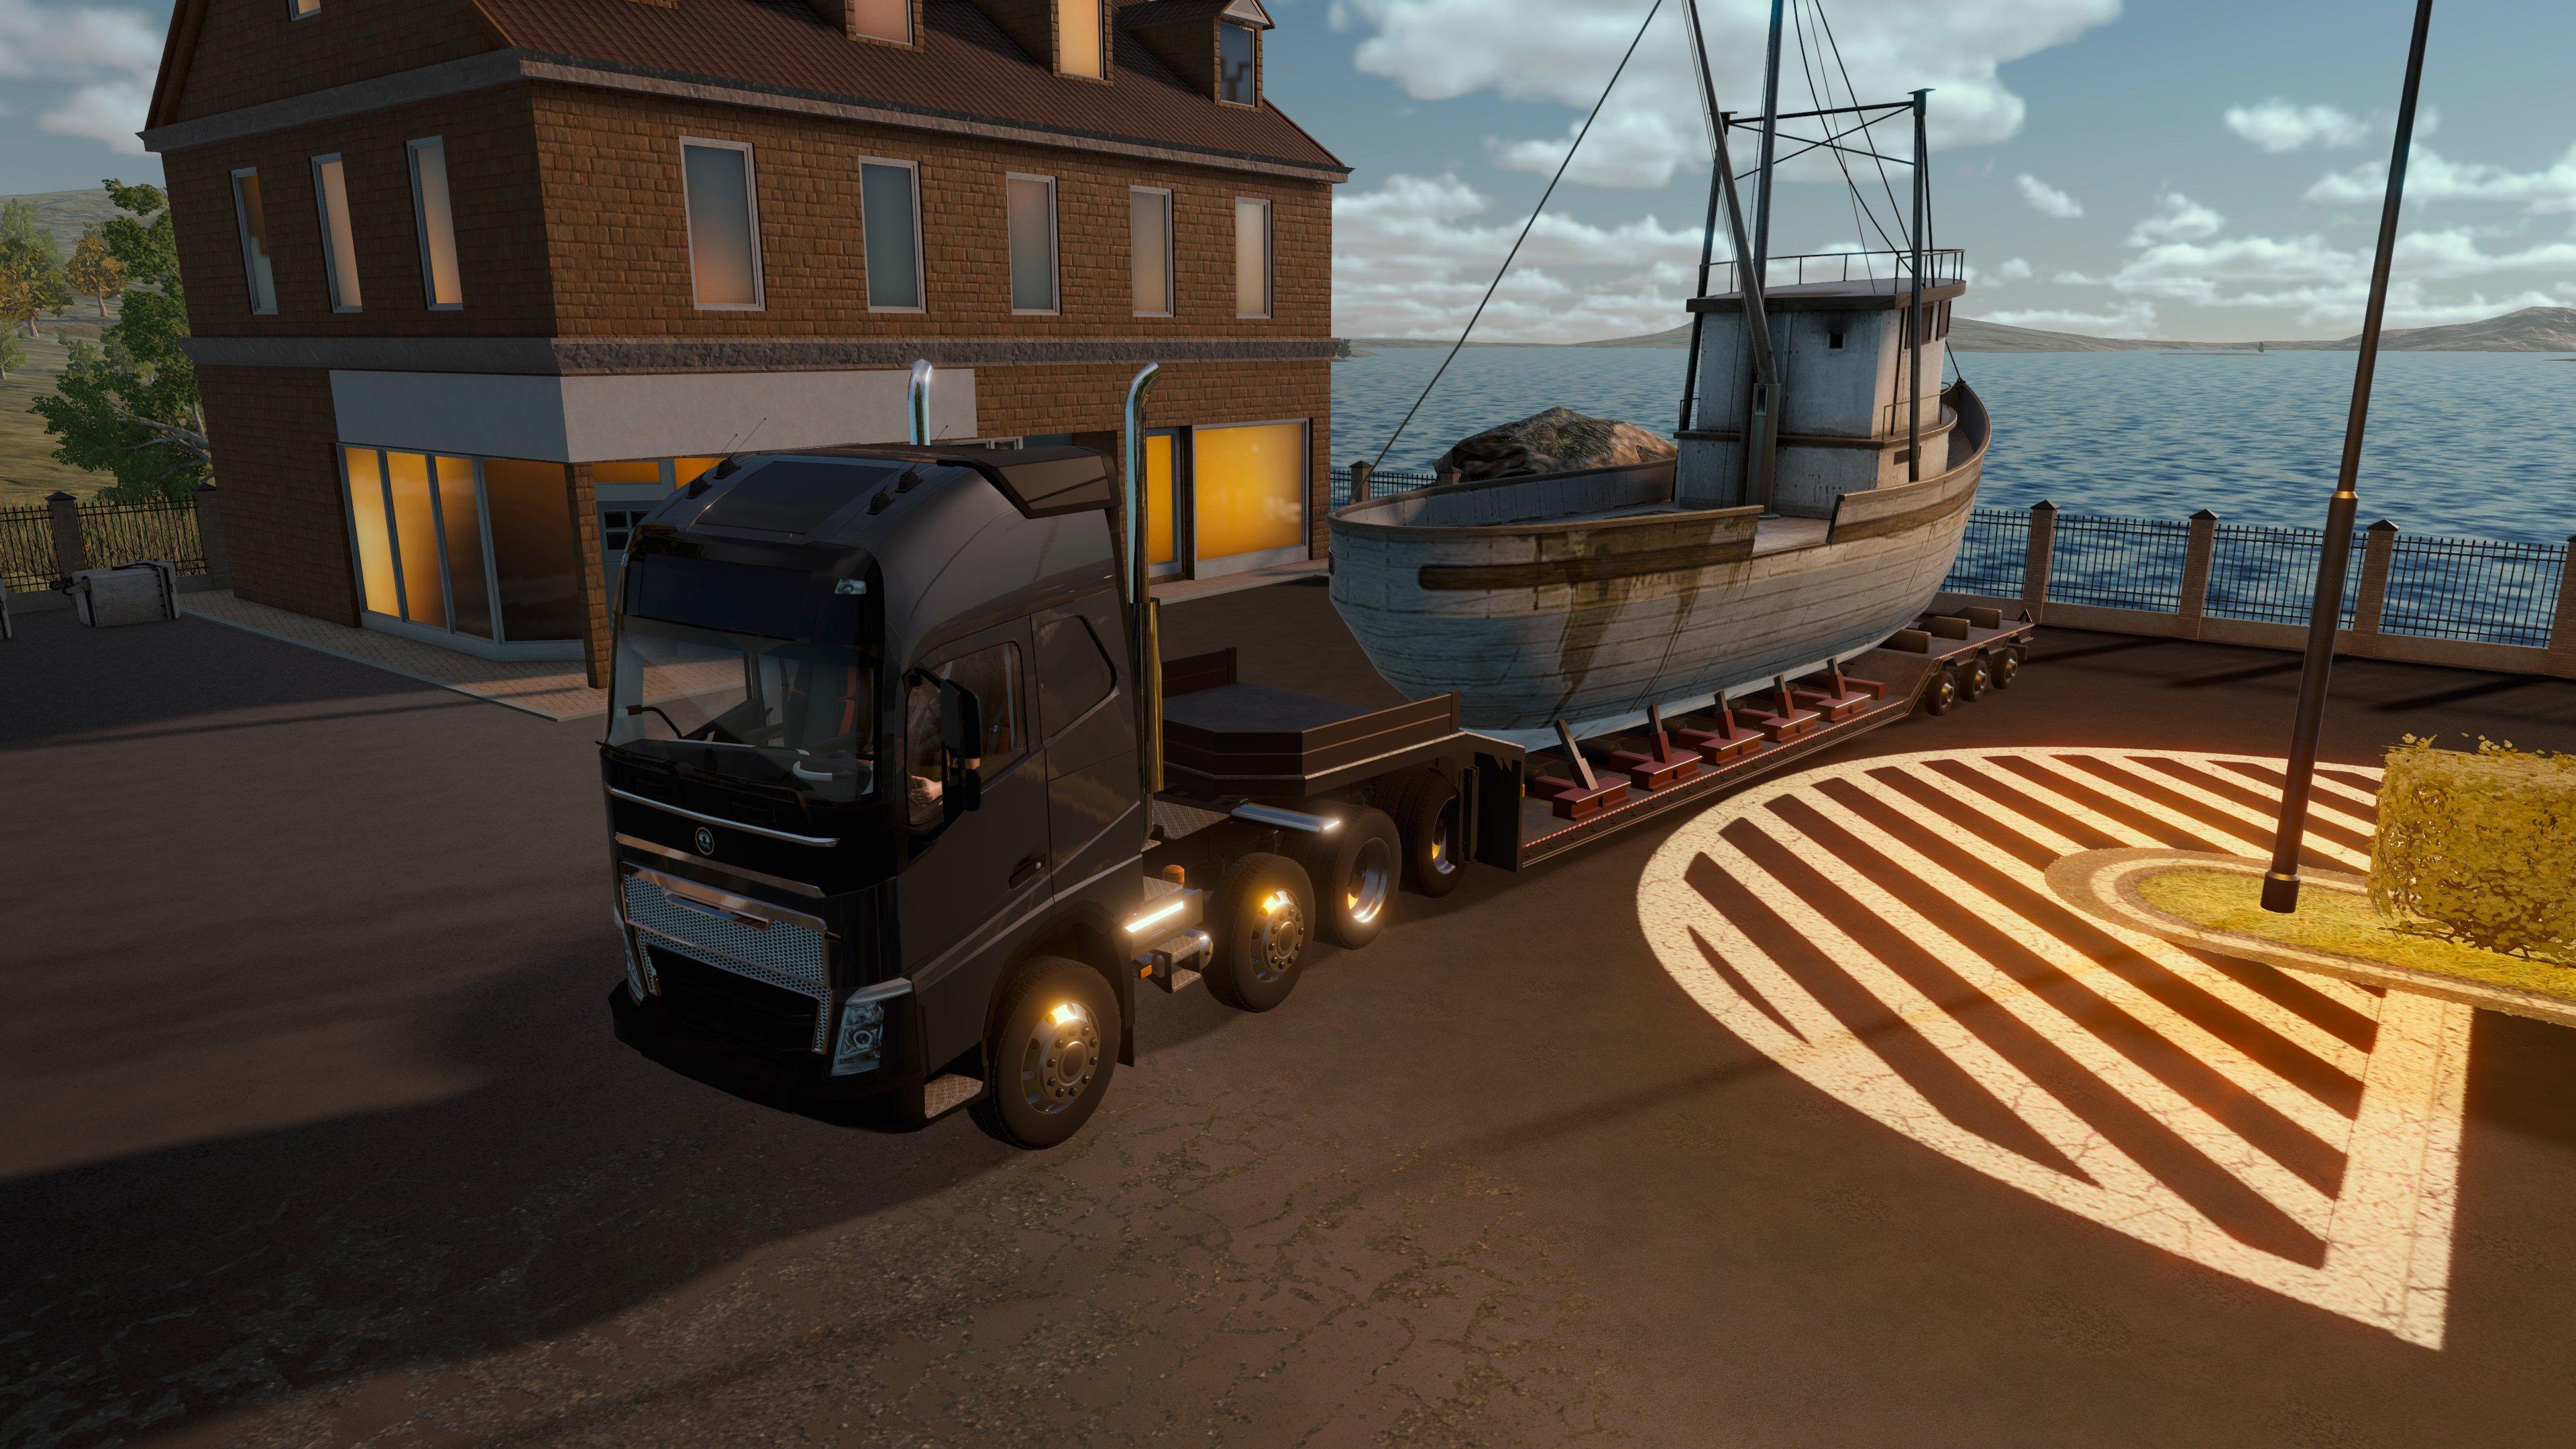 Truck Driver ganha Premium Edition em setembro para PS5 e Xbox Series S